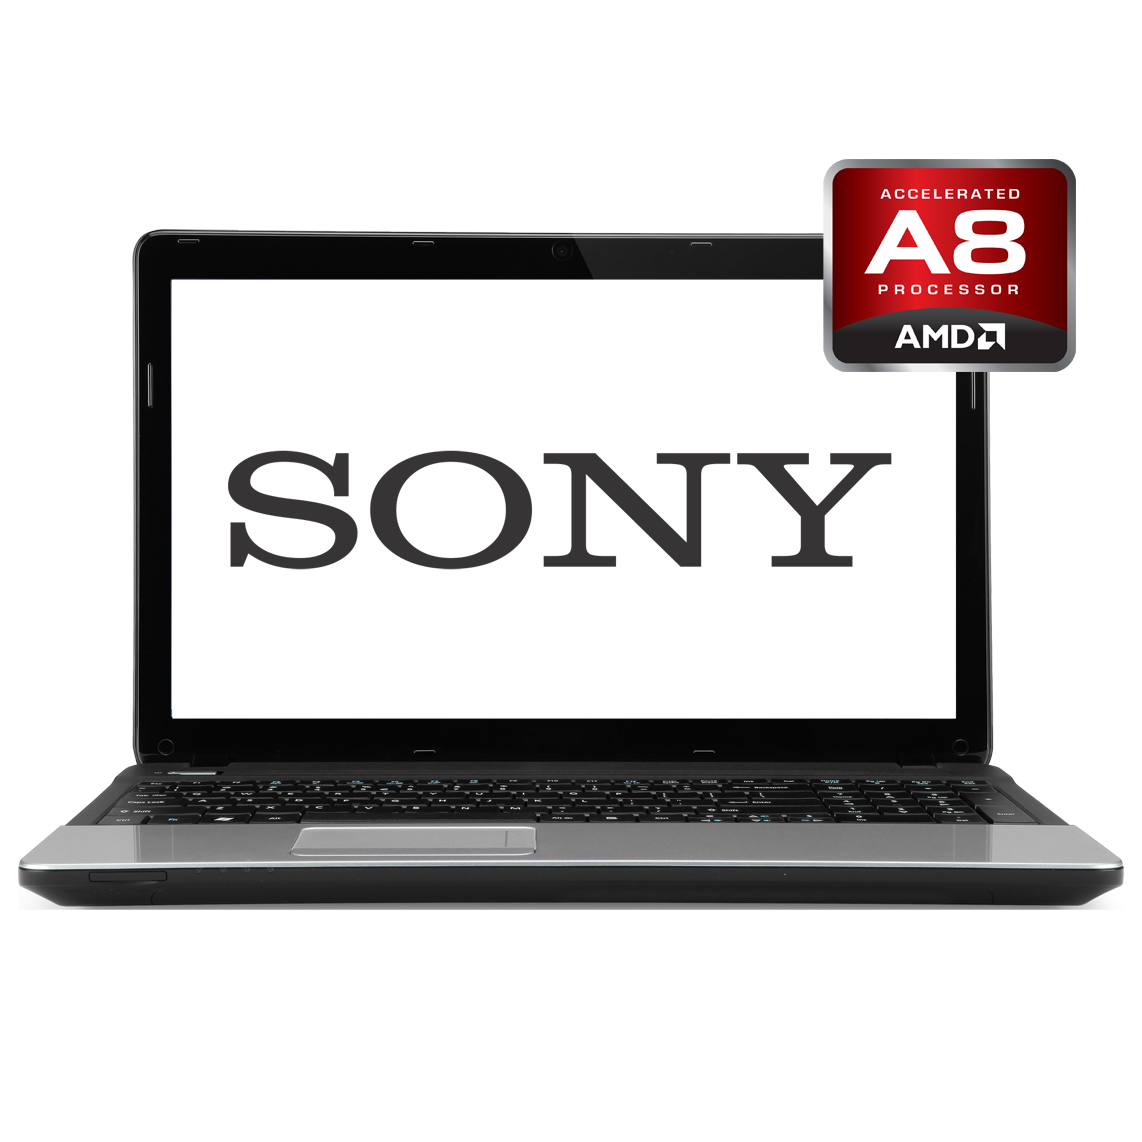 Sony - 14 inch AMD A8